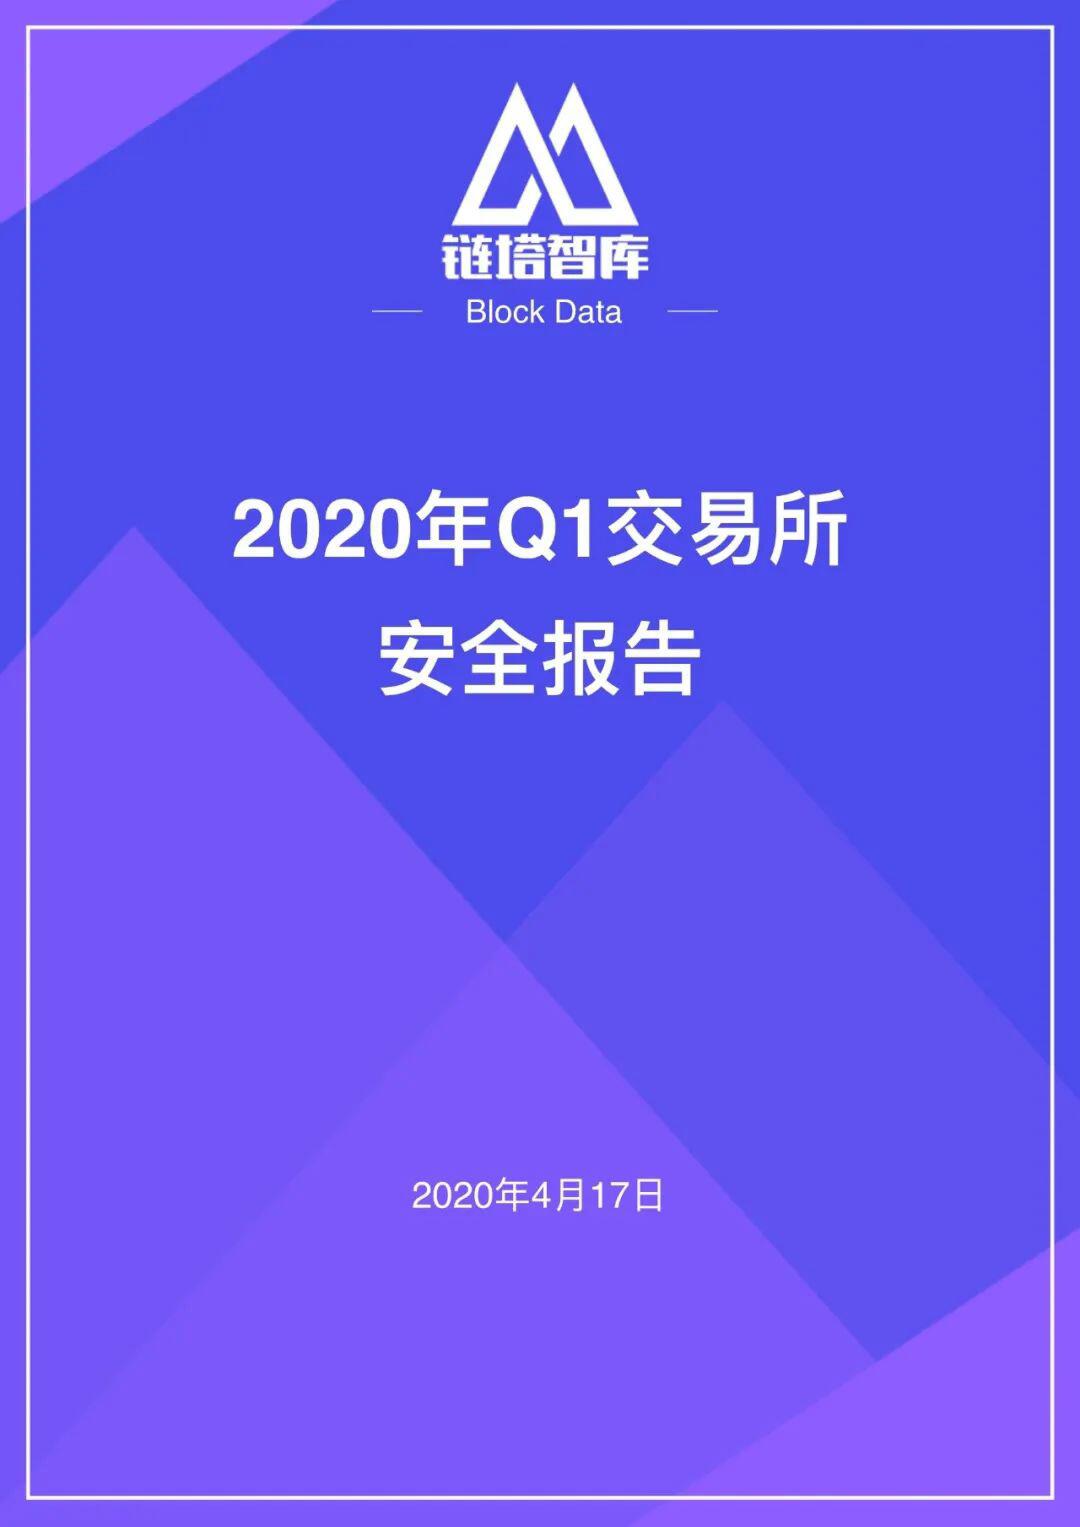 2020年Q1交易所安全报告